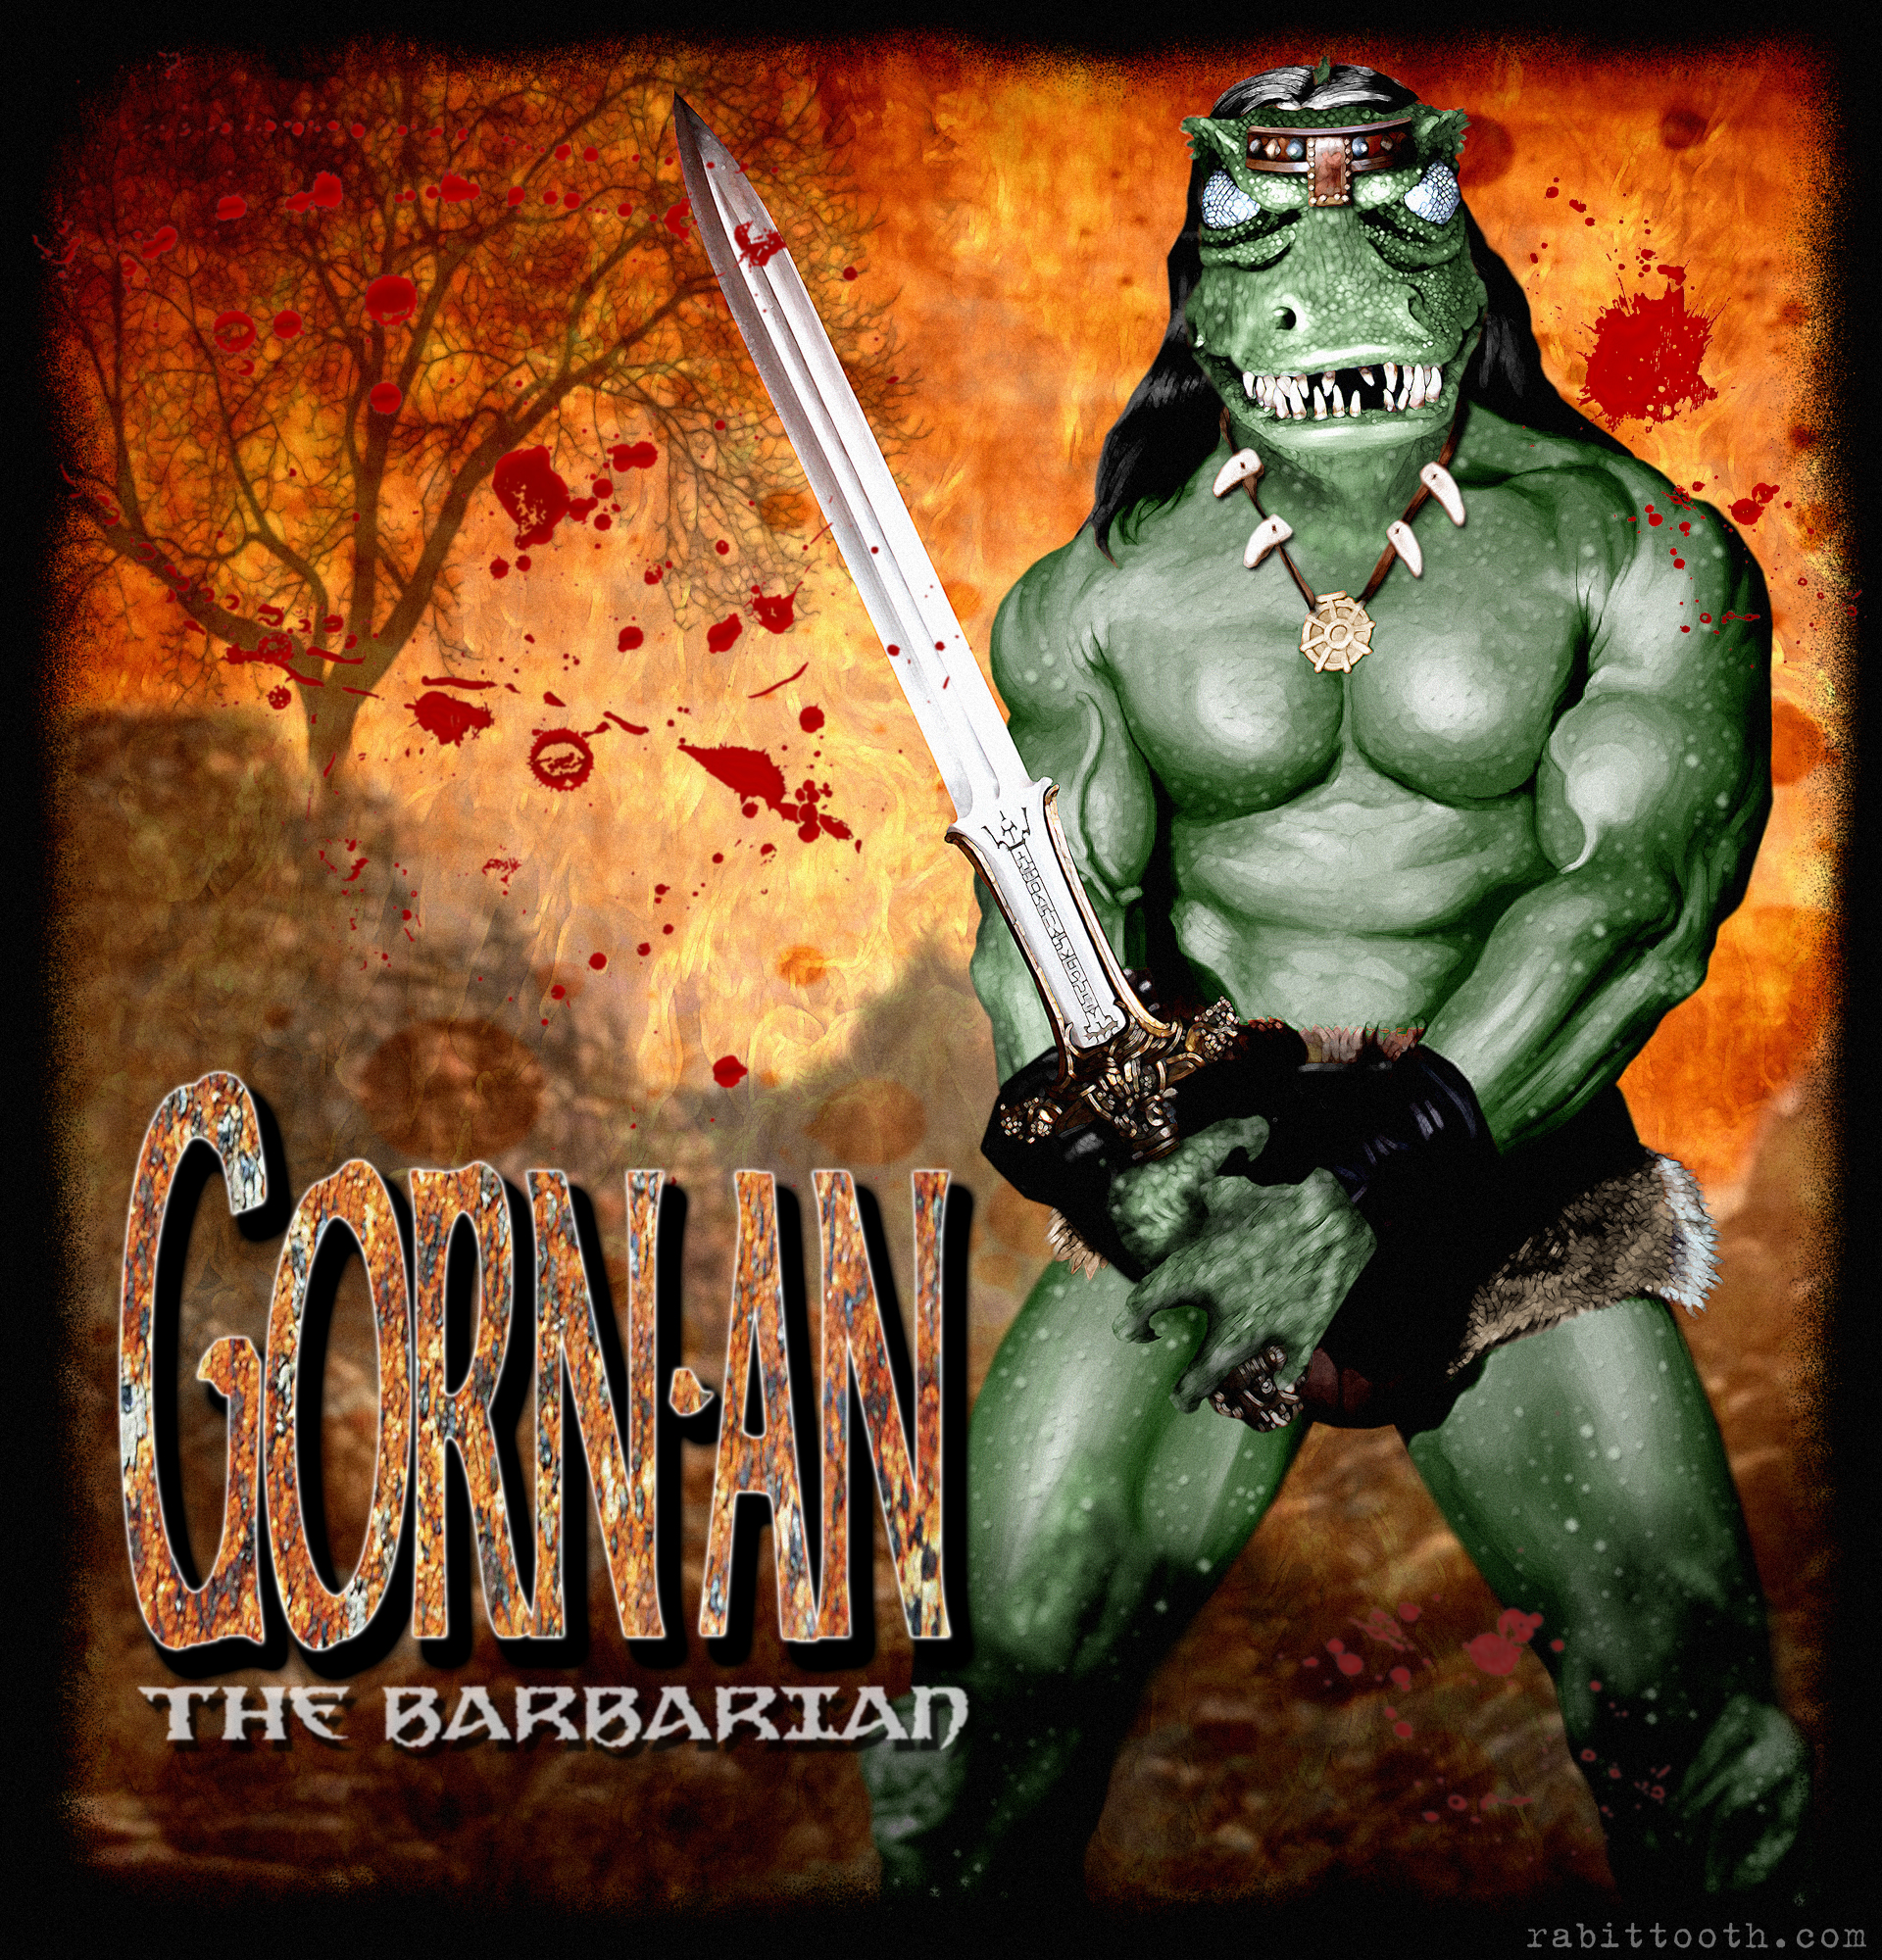 gorn_an_the_barbarian_by_rabittooth-d4ri0ei.jpg